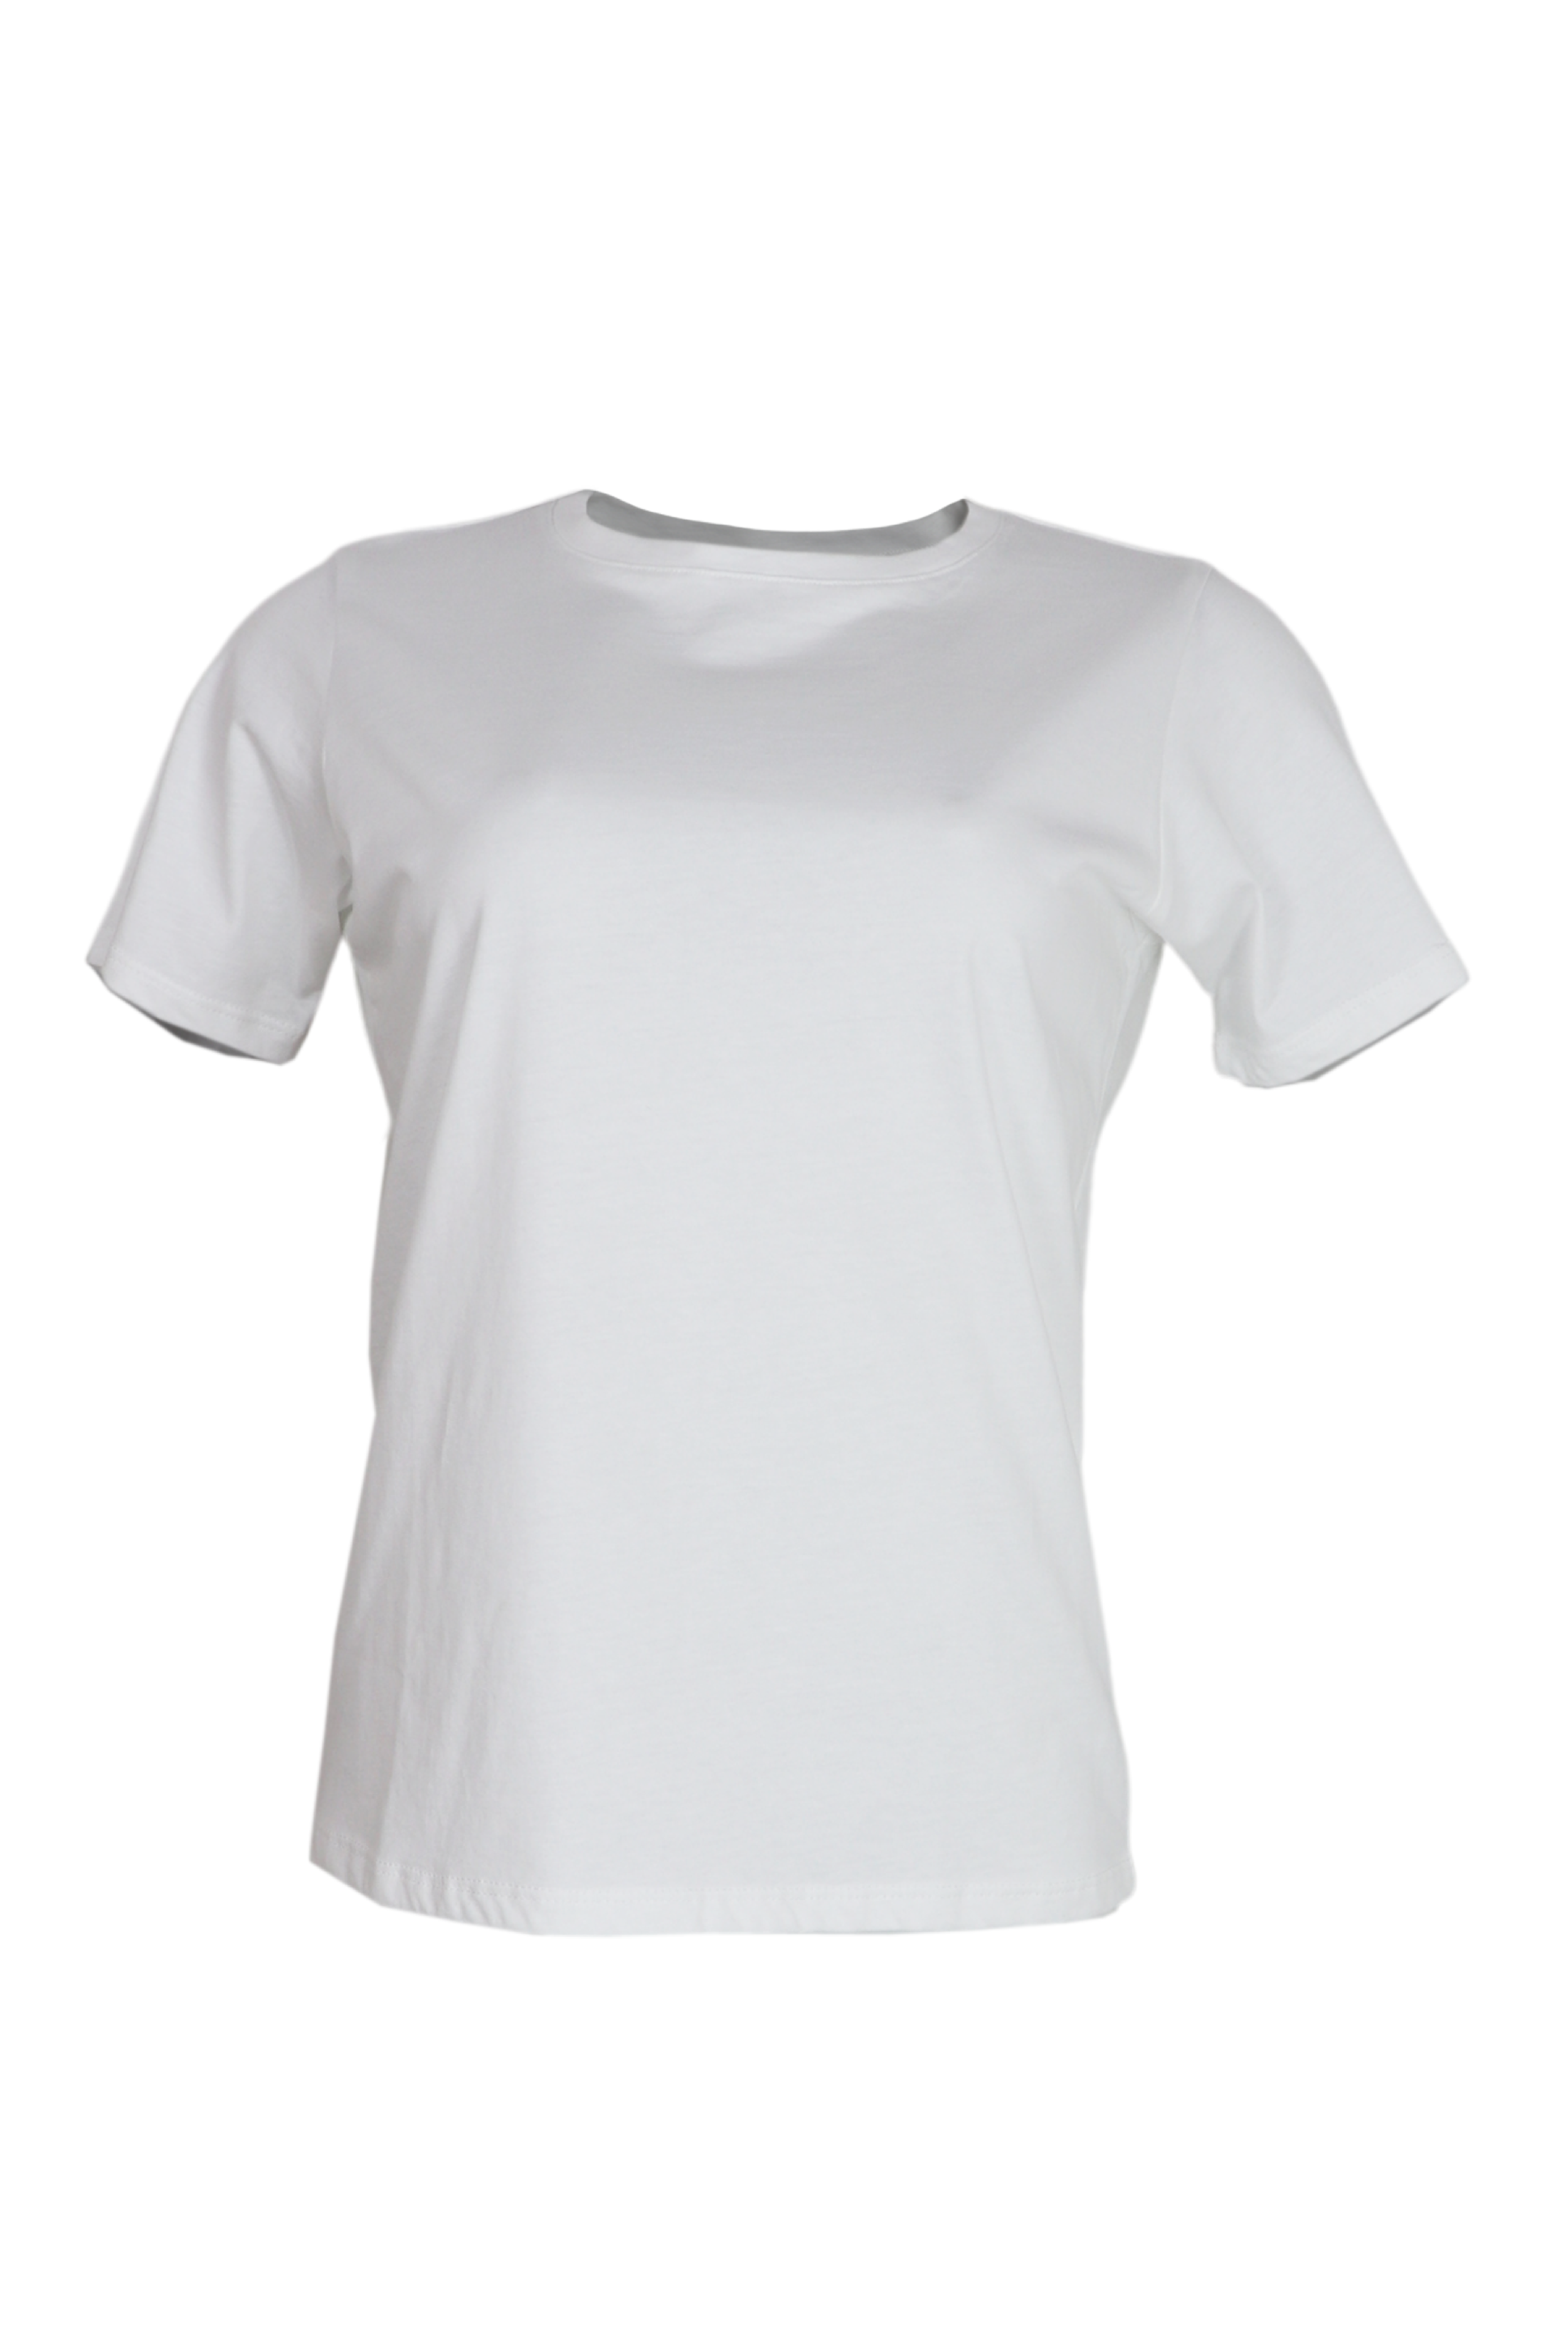 Camiseta básica cuello redondo color blanco